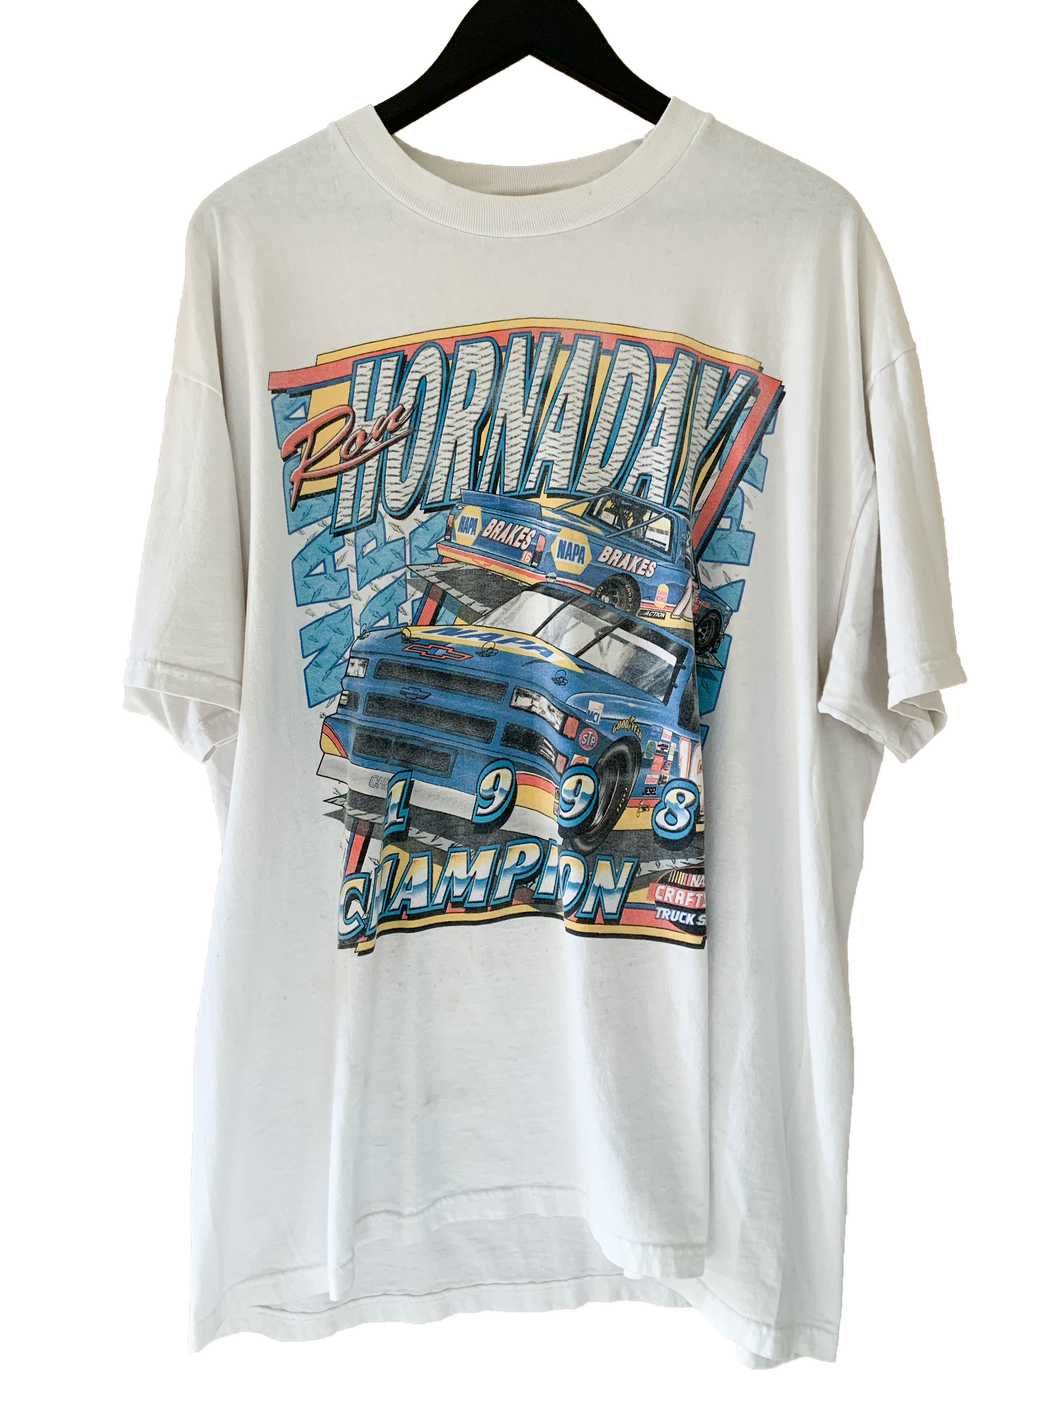 1998 RON HORNADAY NASCAR TEE - XL